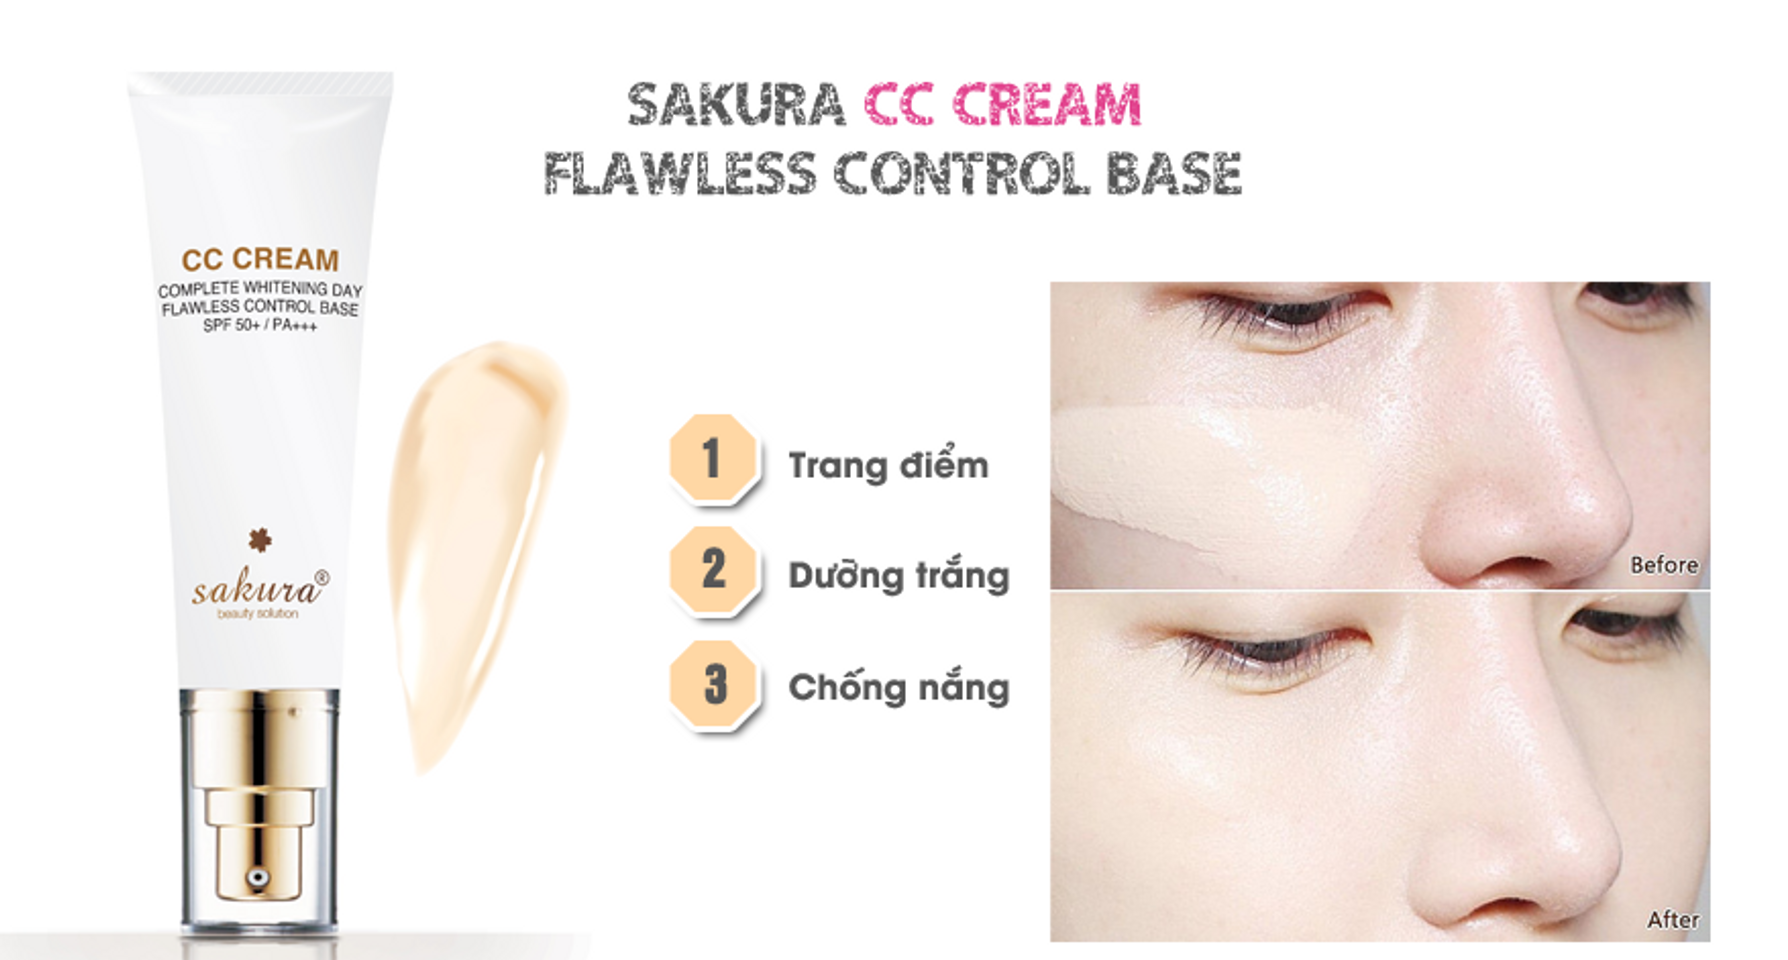 Sakura CC Cream còn giúp làm trắng da, se khít lỗ chân lông, phục hồi da hư tổn